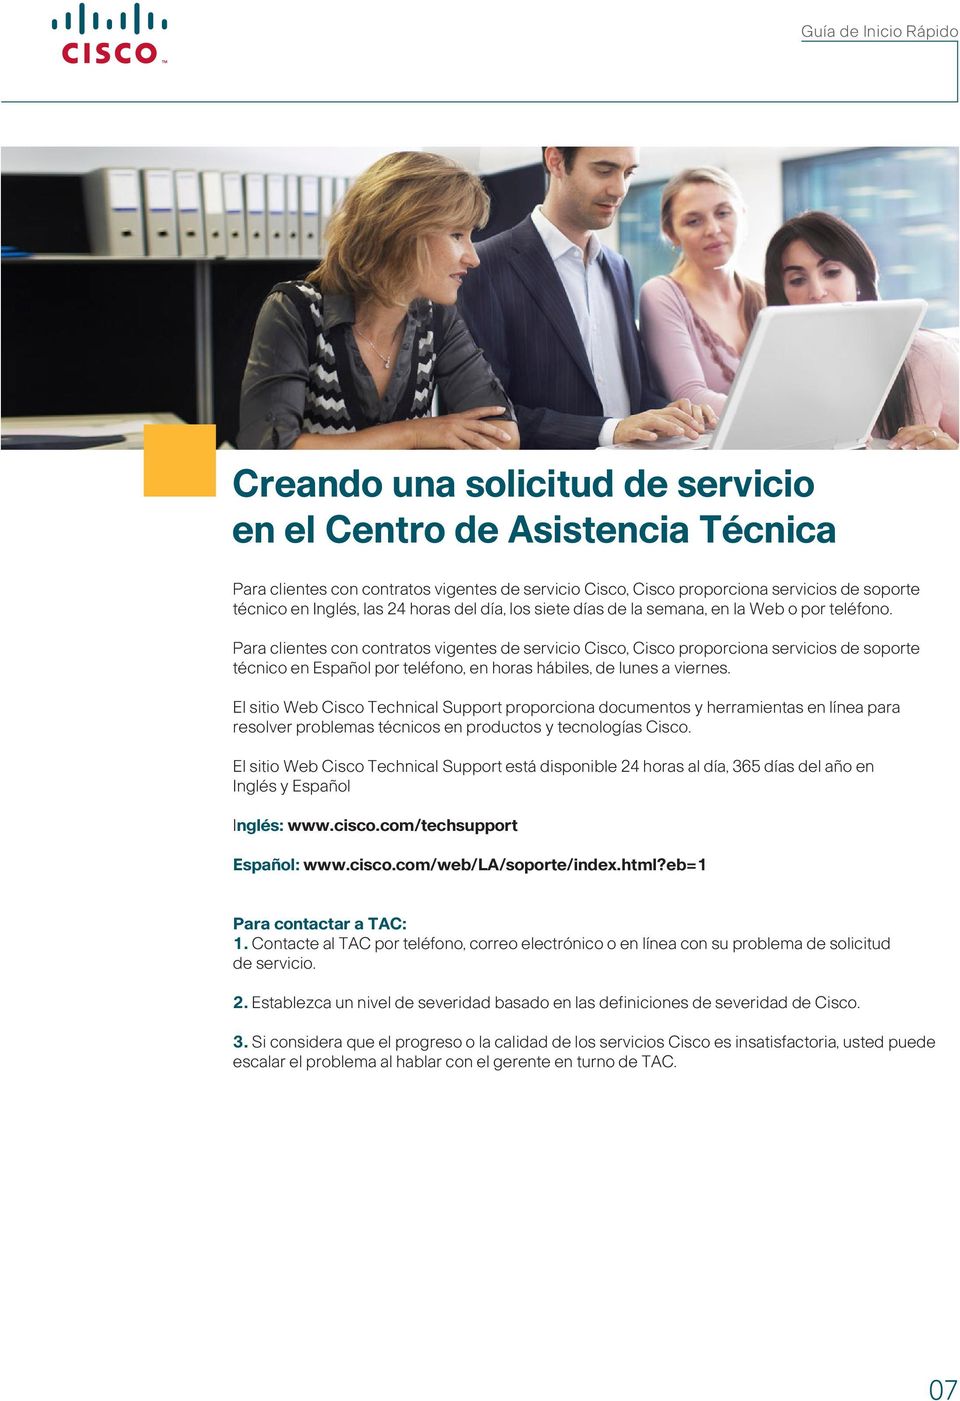 Para clientes con contratos vigentes de servicio Cisco, Cisco proporciona servicios de soporte técnico en Español por teléfono, en horas hábiles, de lunes a viernes.